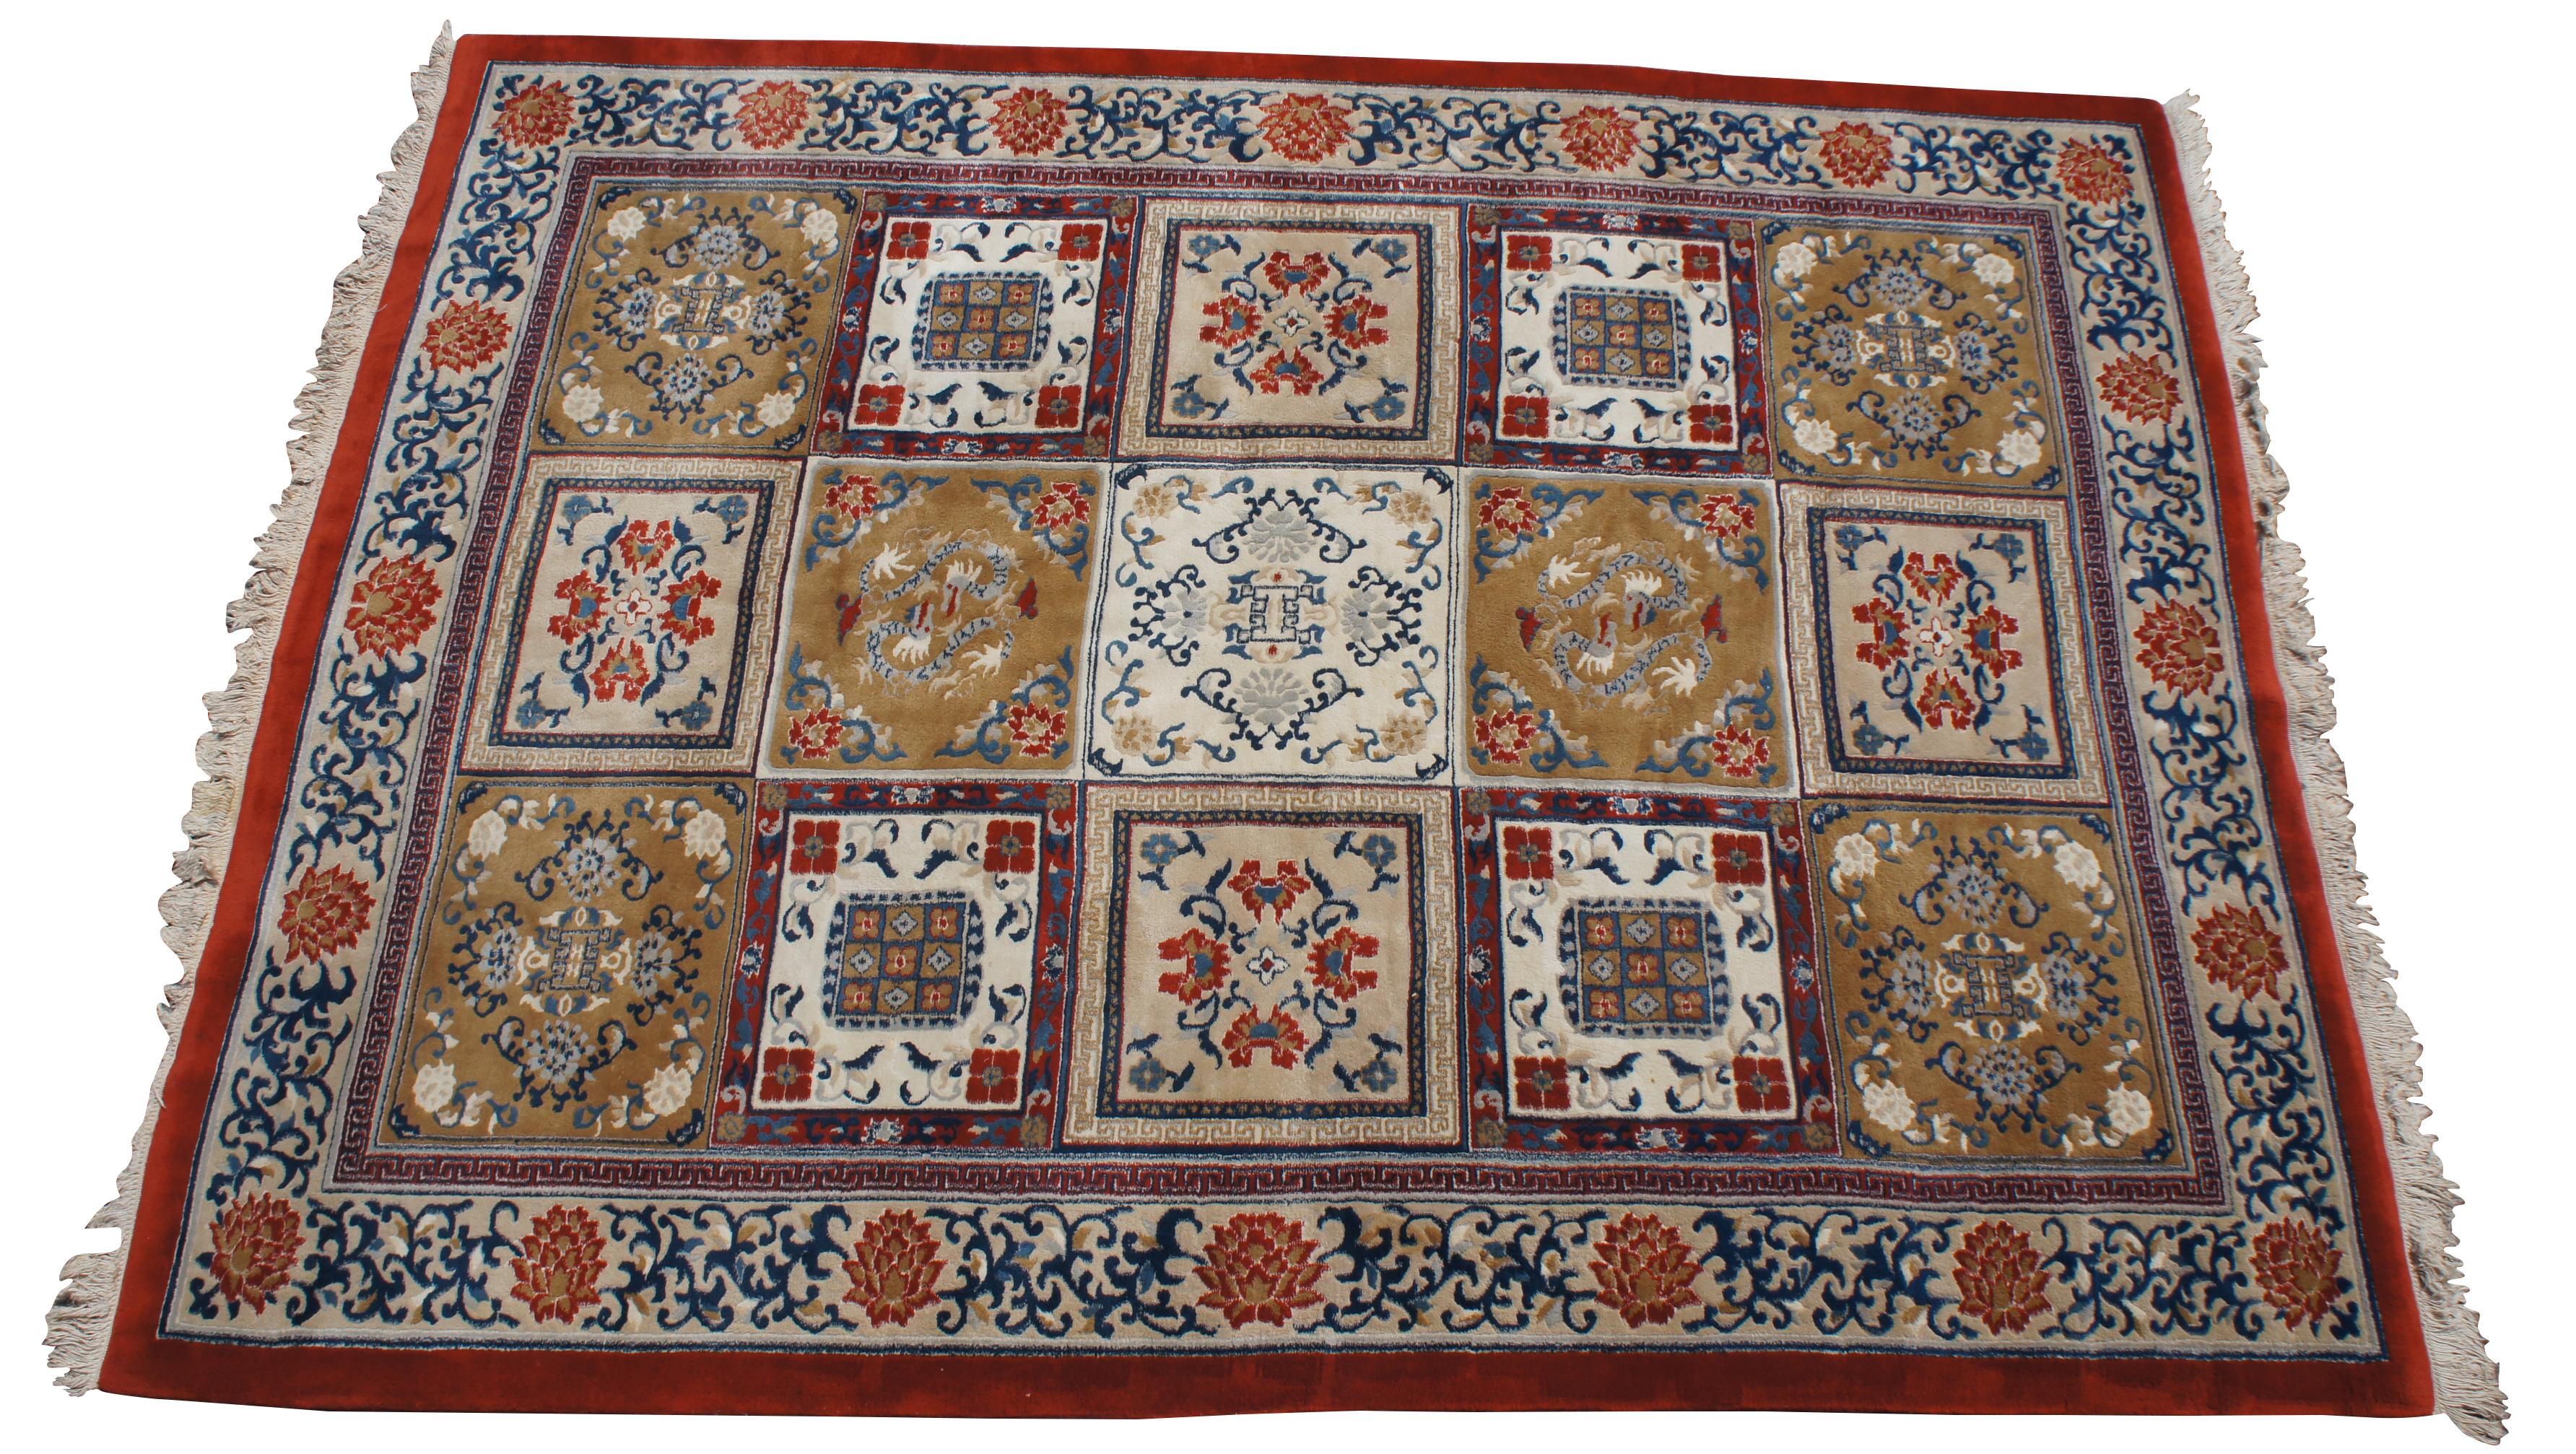 Vintage tapis Kandahar 100% laine vierge, noué à la main. Il s'agit d'un dessin géométrique avec des boîtes / carreaux / carrés avec différents motifs. Principalement floral avec des chrysanthèmes et d'autres fleurs en plus de quelques animas